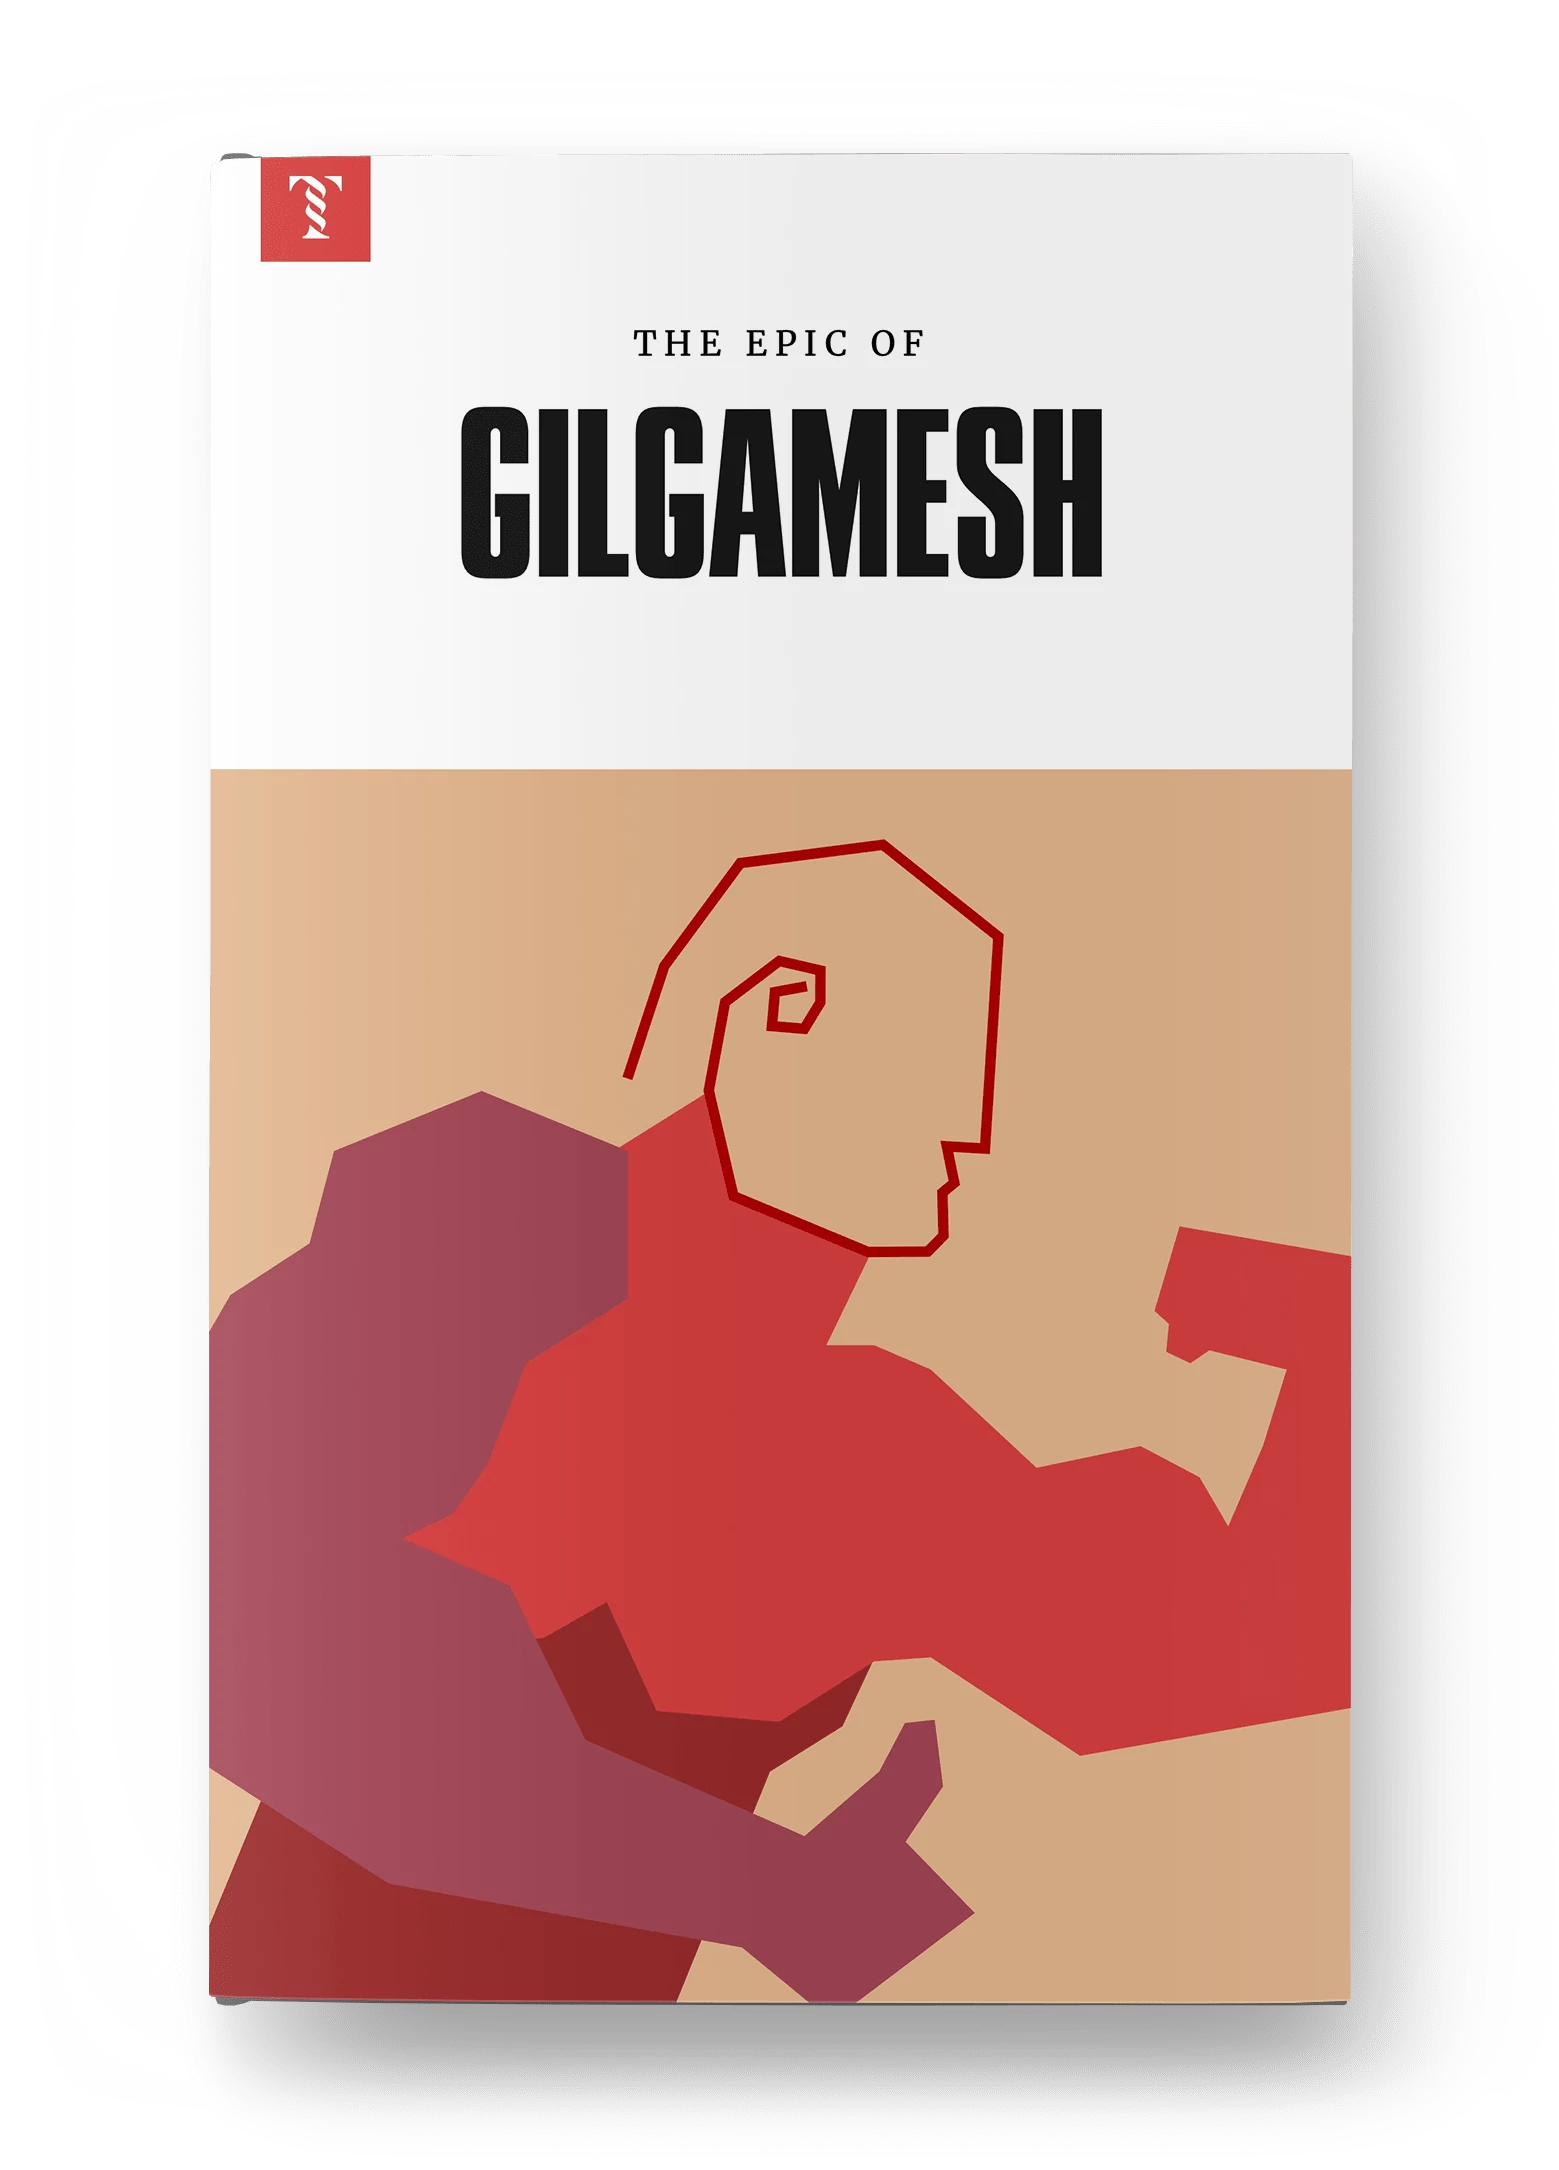 The Epic of Gilgamesh, Mesopotamia